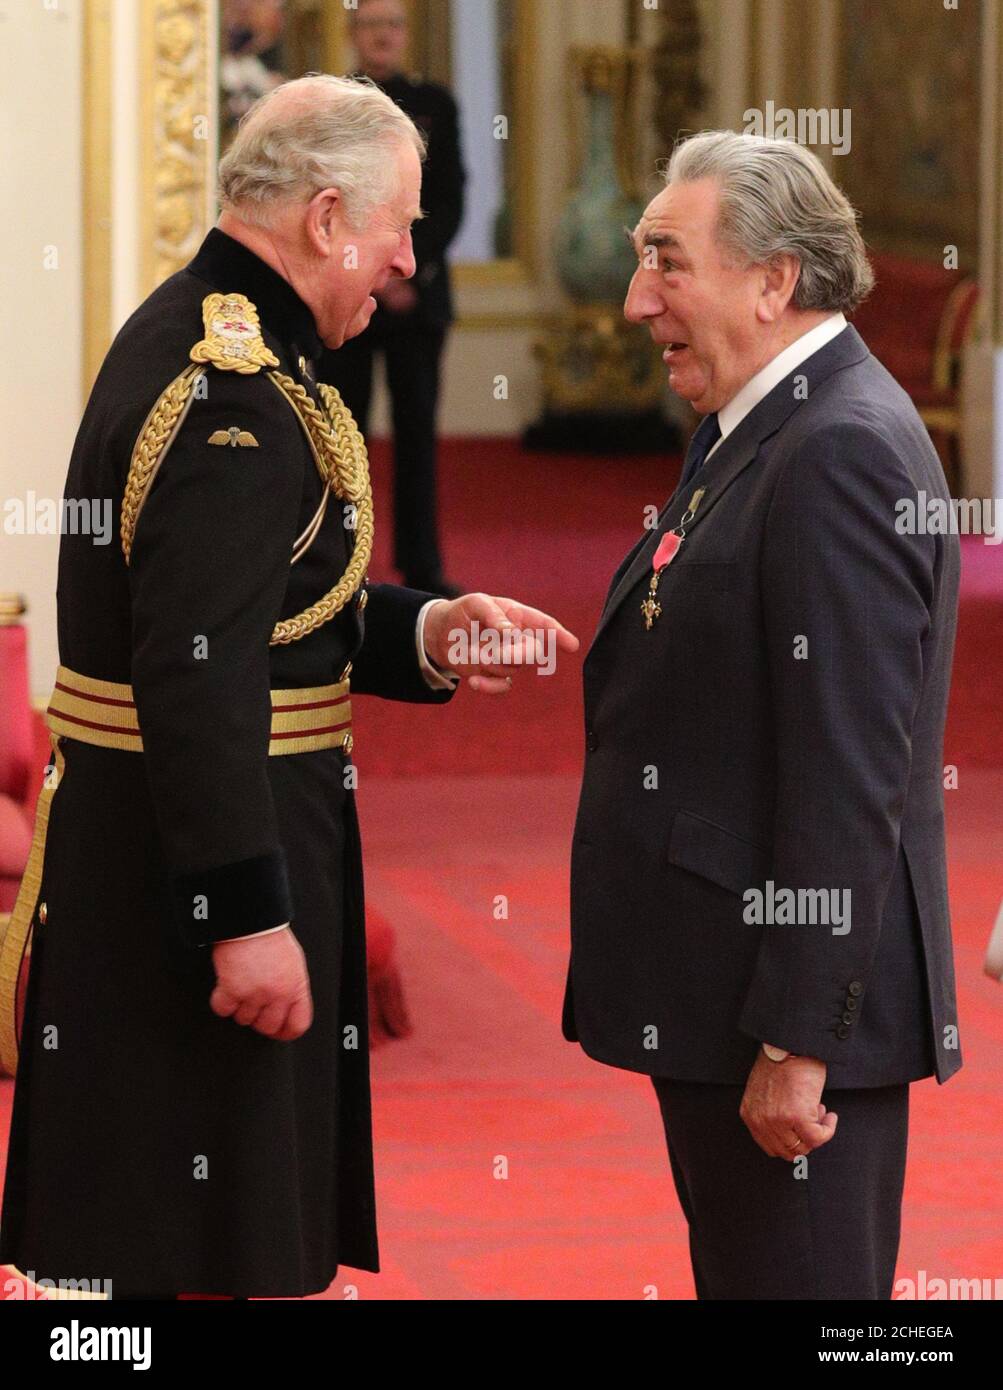 L'acteur Jim carter, plus connu pour son rôle à Downton Abbey et jouant M. Carson, est nommé Officier de l'ordre de l'Empire britannique (OBE) par le Prince de Galles lors d'une cérémonie d'investiture à Buckingham Palace, Londres. Banque D'Images